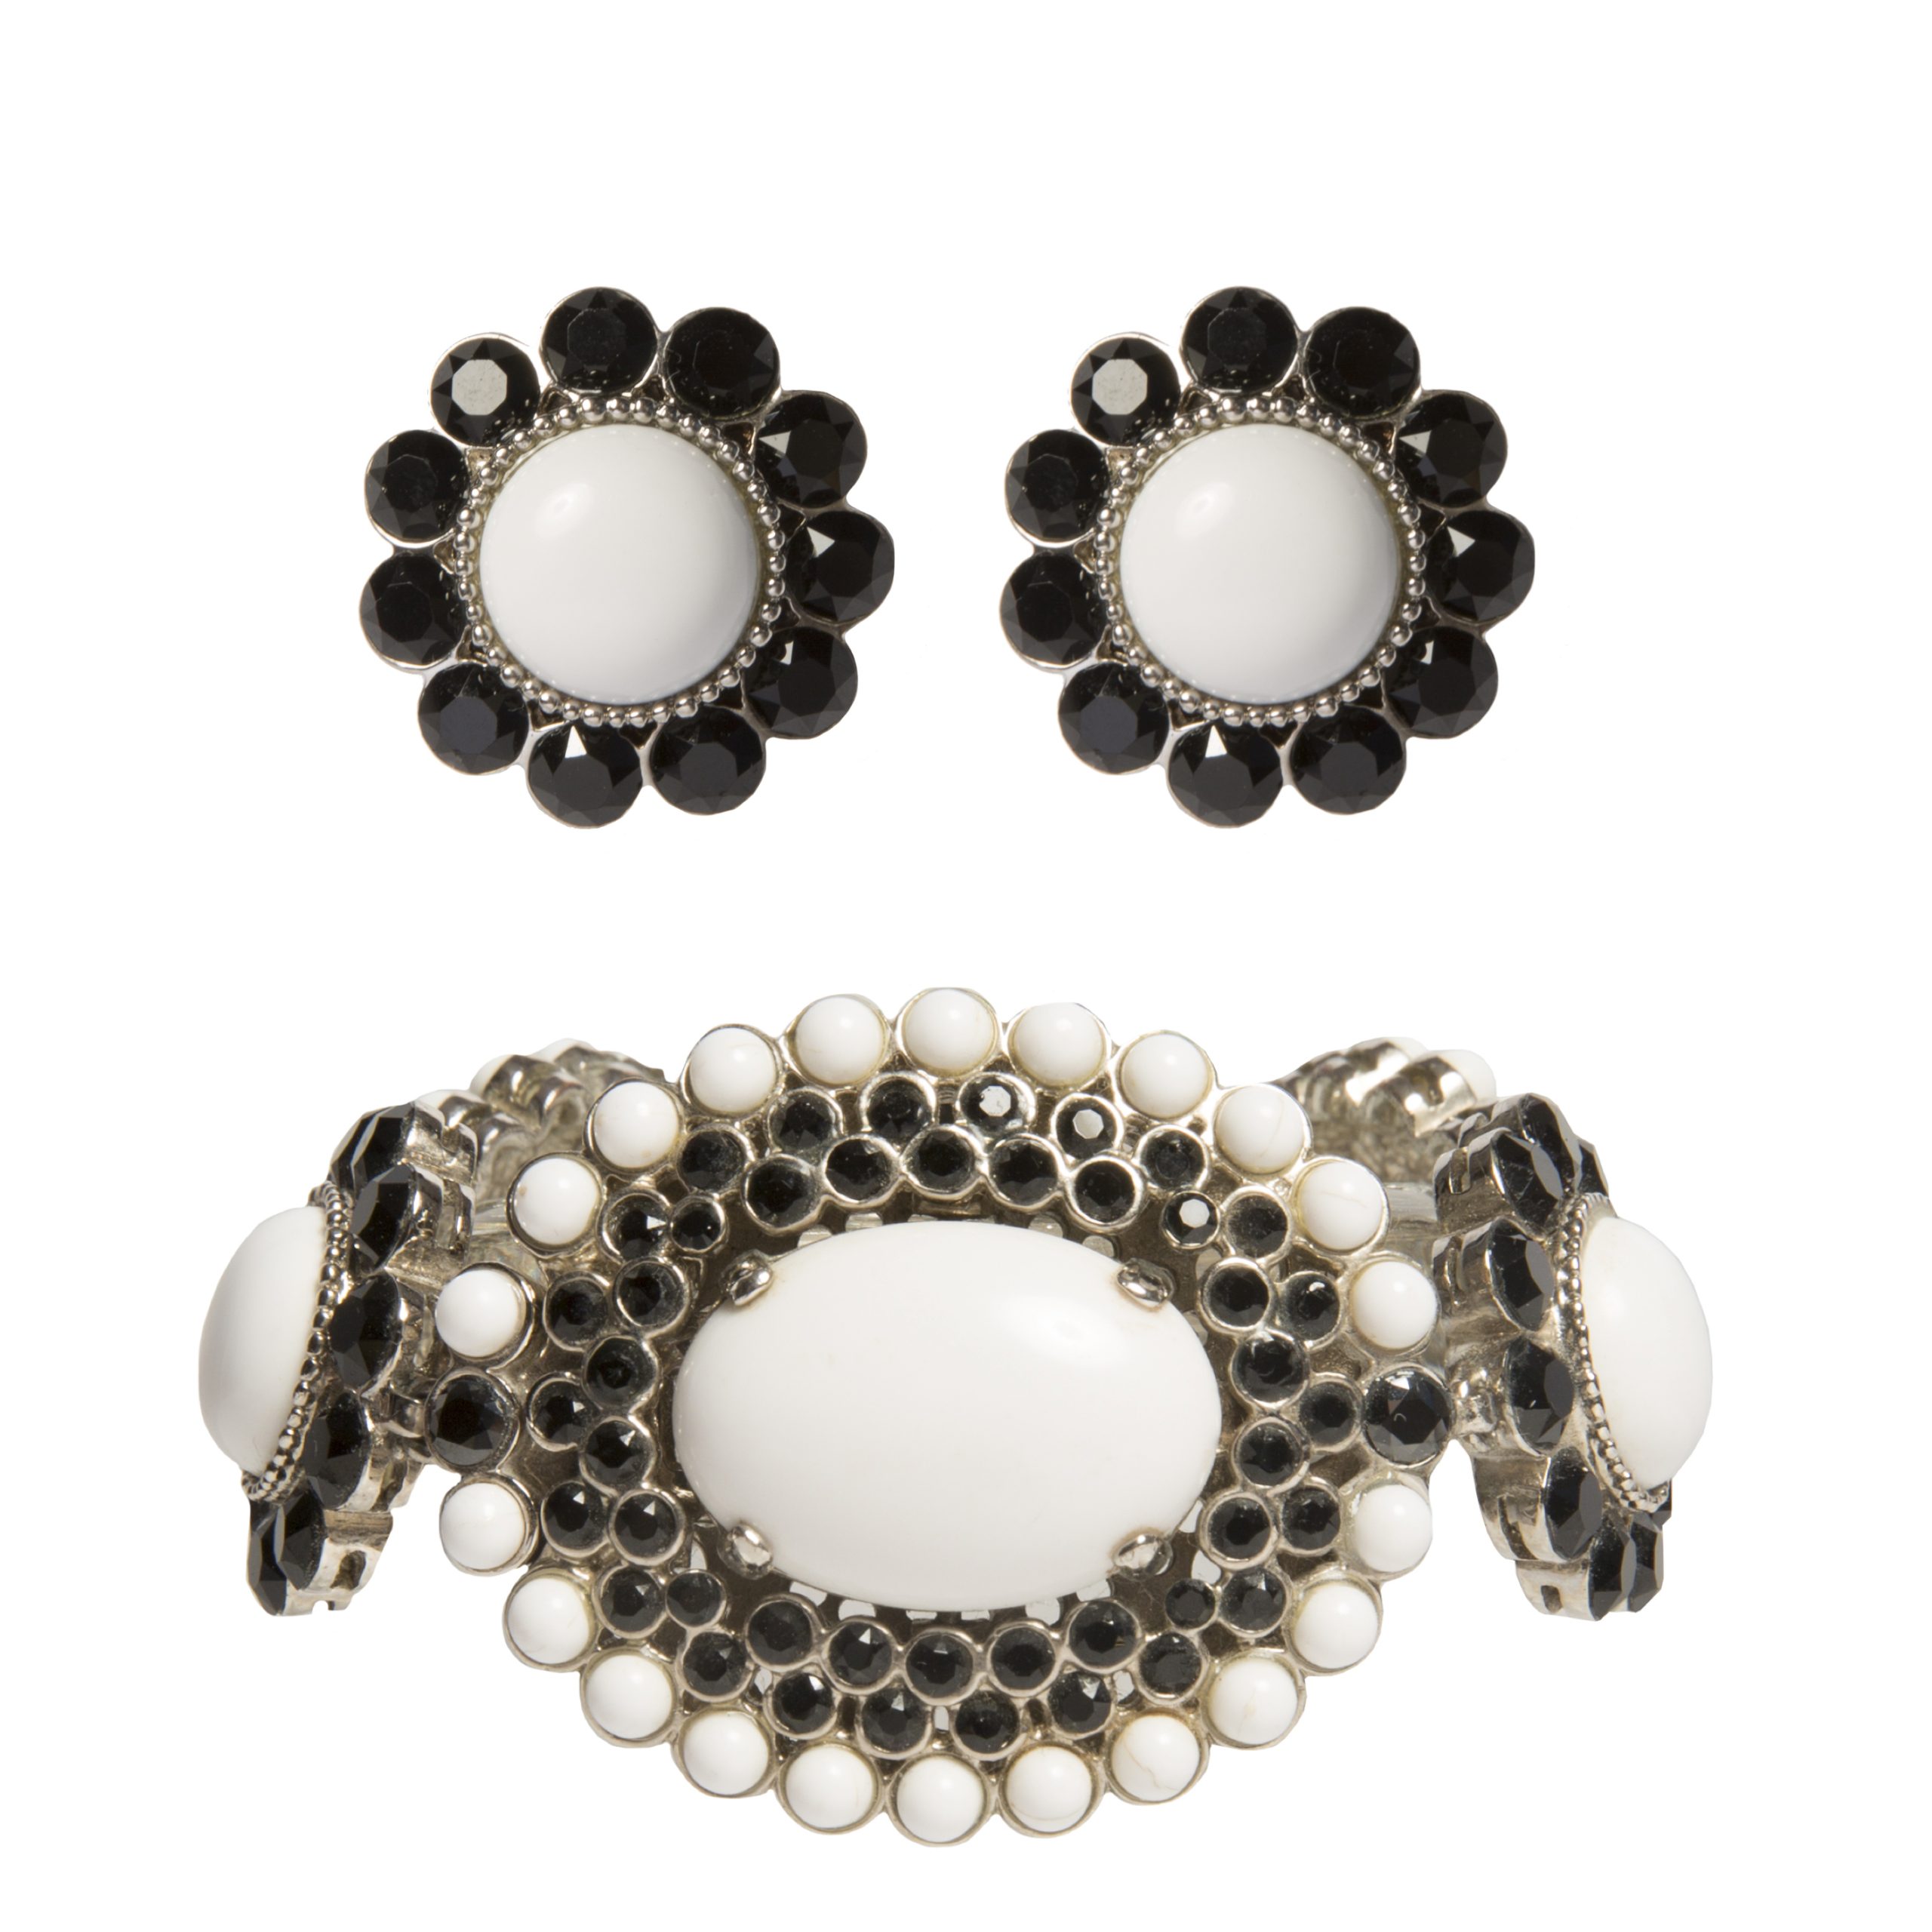 Black and white enamel faux pearl set